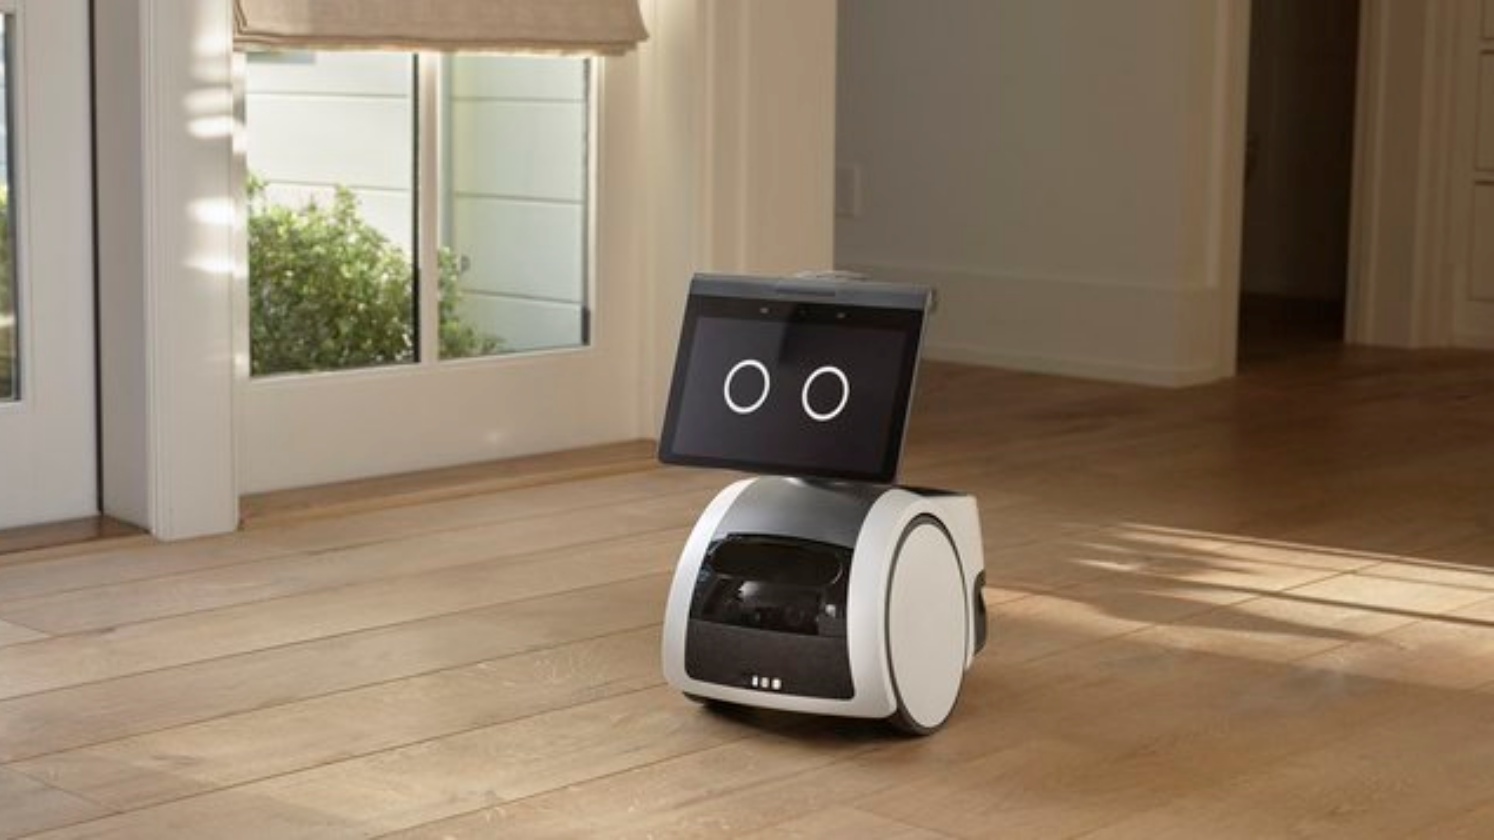 روبوت قادر على التجول في المنازل تطرحه شركة أمازون. ( من صفحة Scott Stein في تويتر)